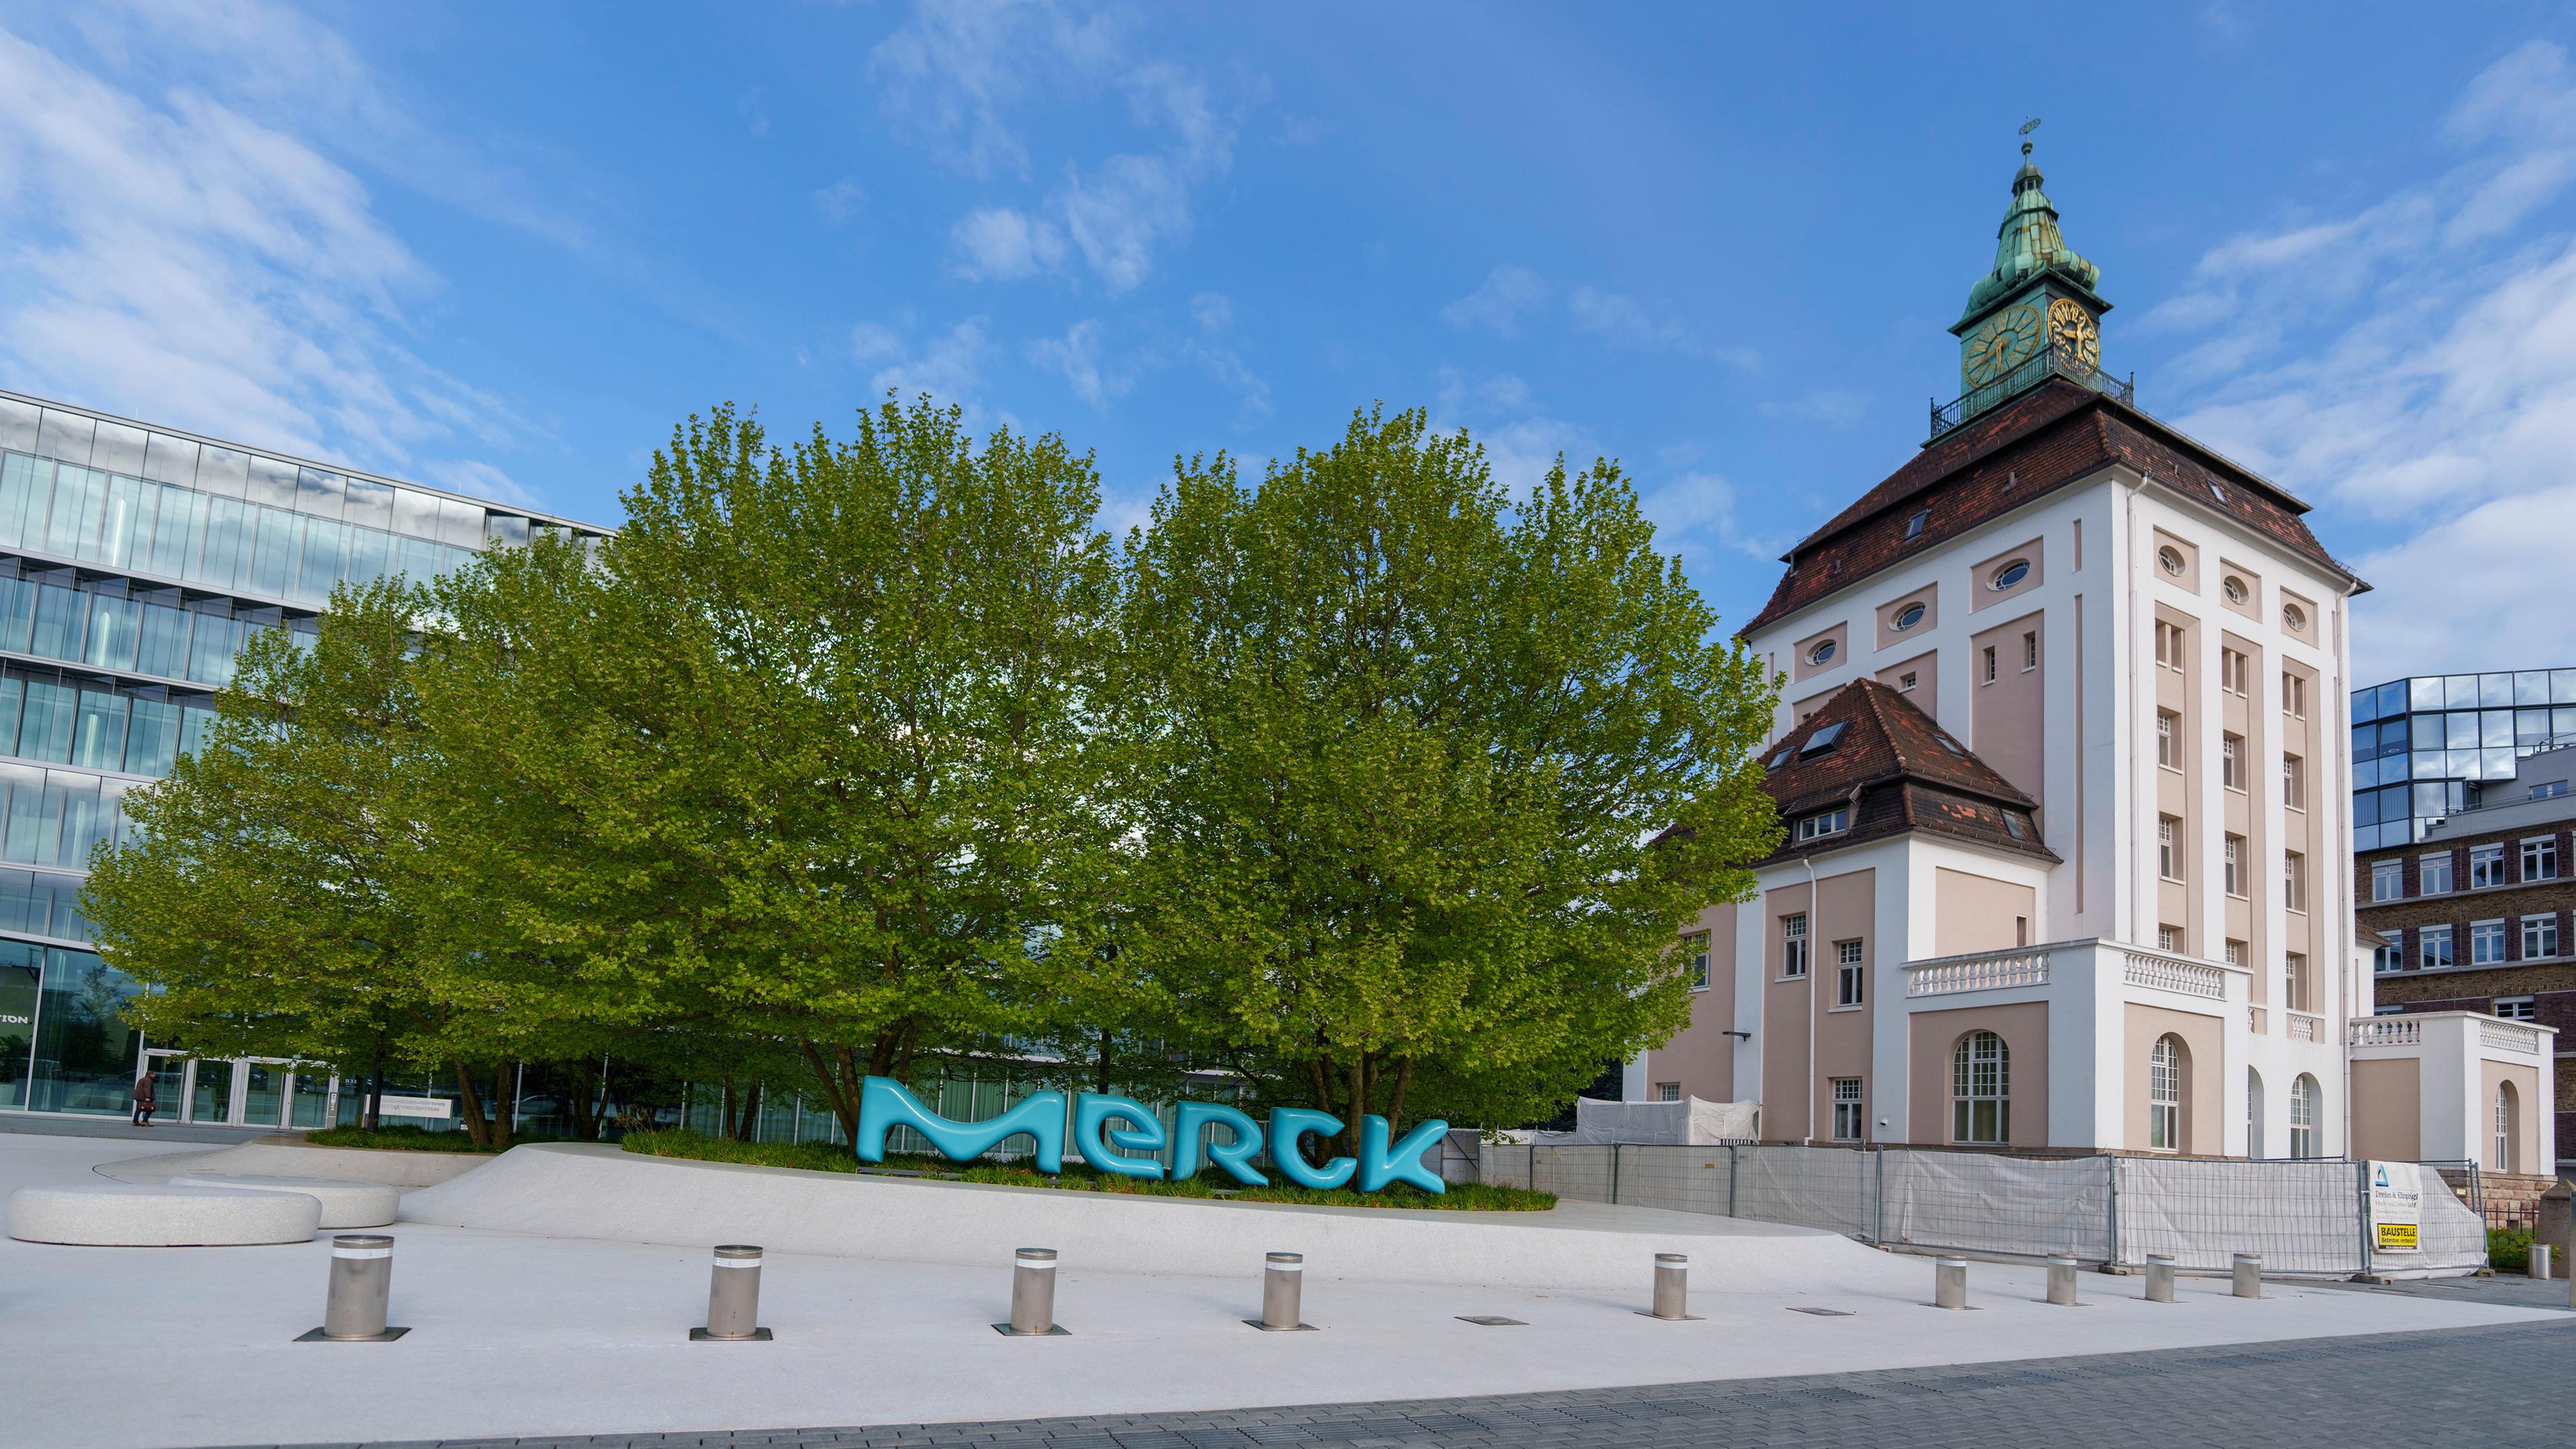 Bundeskanzler legt Grundstein für Merck Forschungszentrum